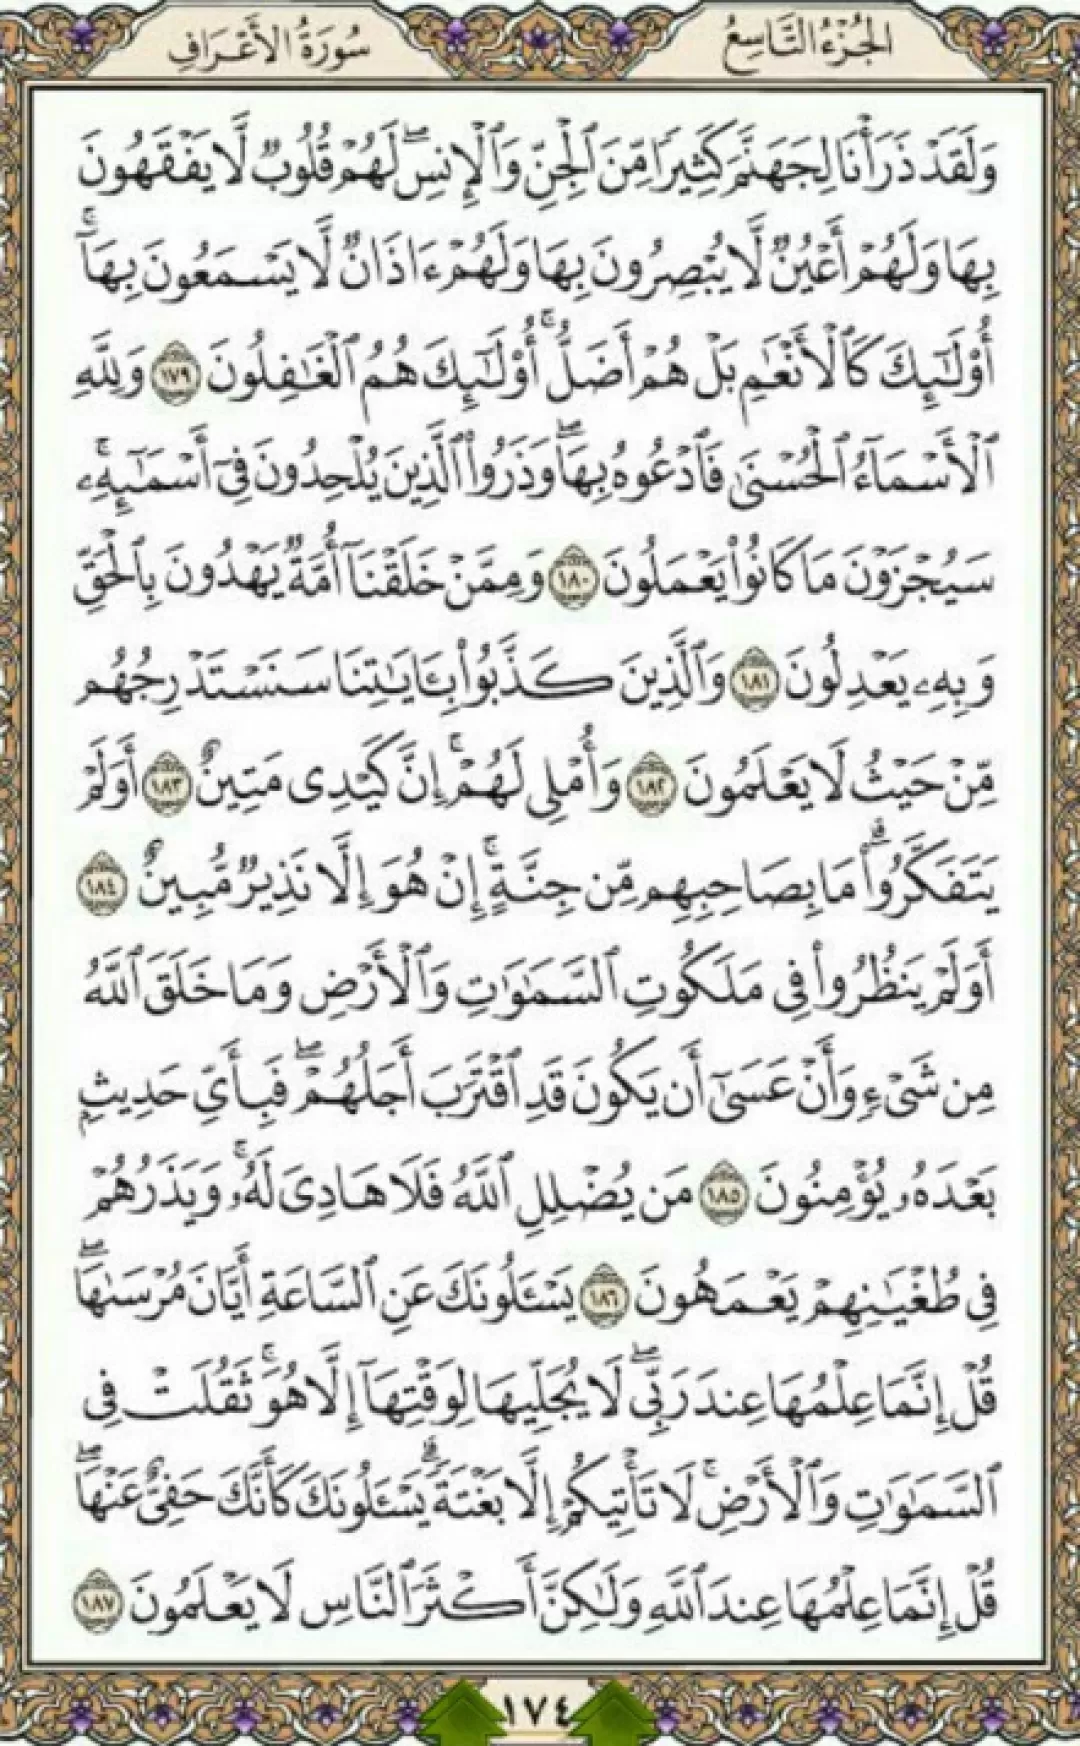 روزانه یک صفحه با شمیم قرآن مجید